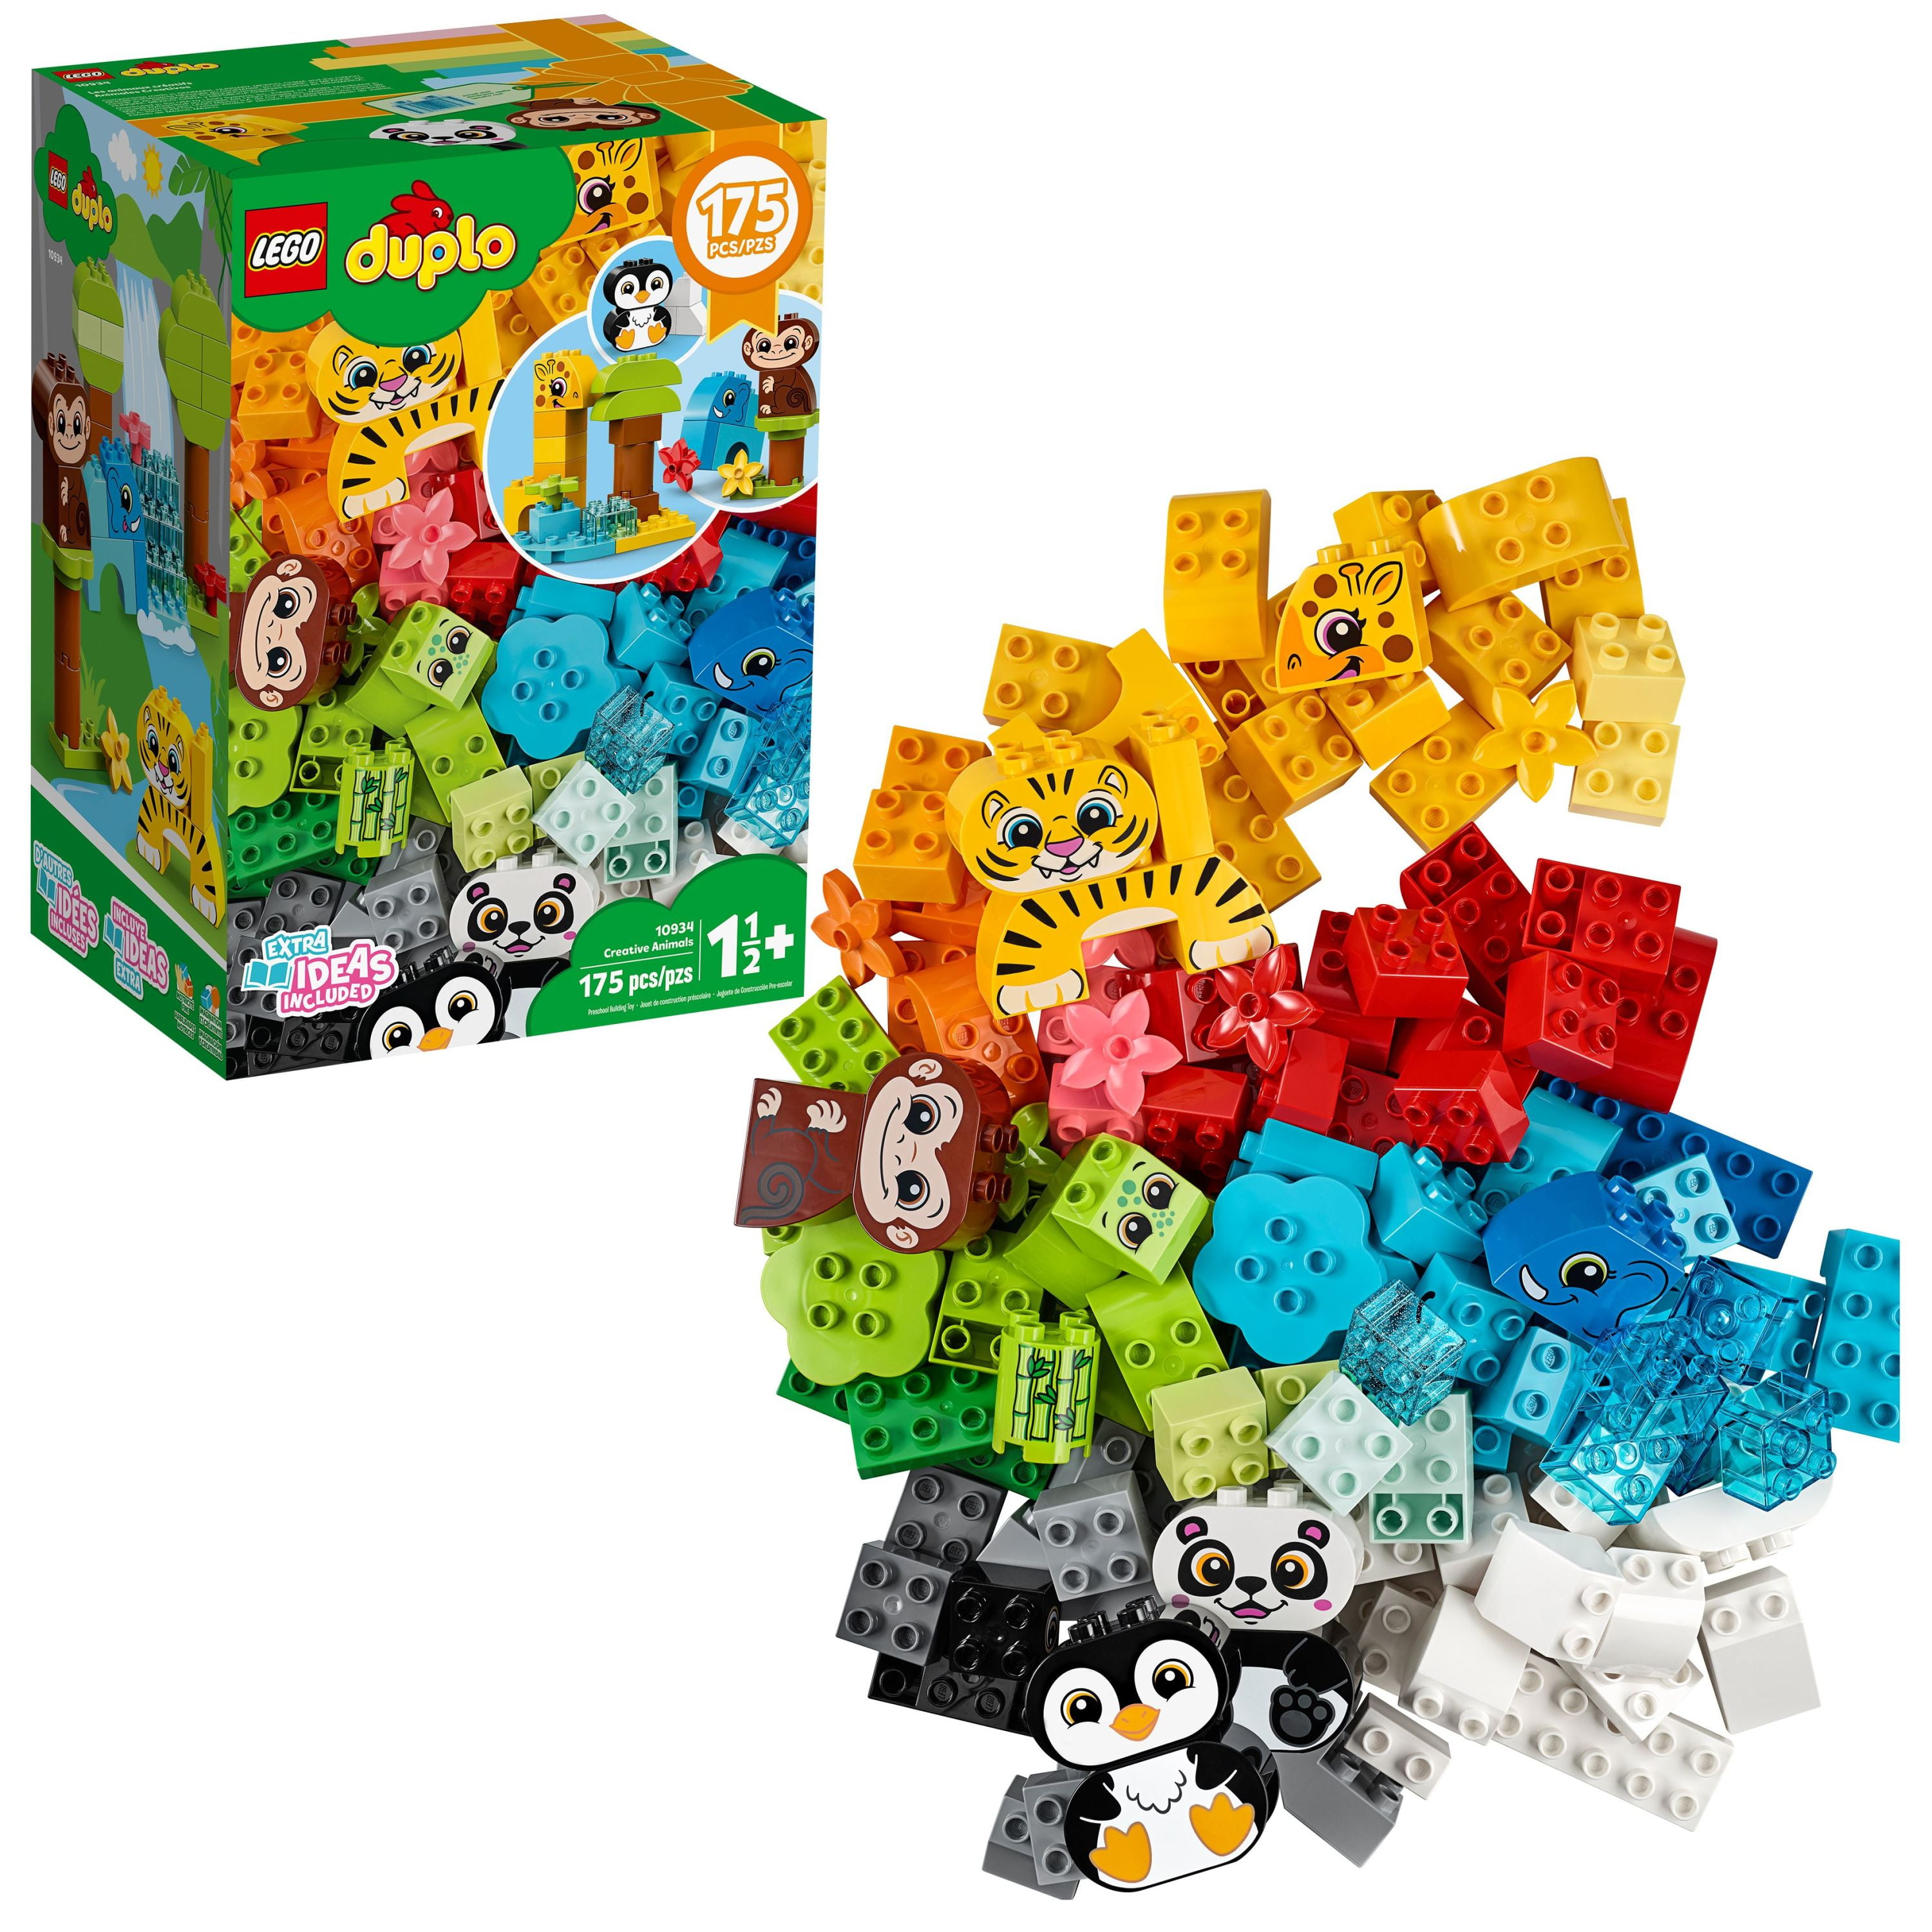 mout Klem basketbal LEGO DUPLO Classic Creative Animals 10934 Building Toy Set (175 Pieces) -  Walmart.com